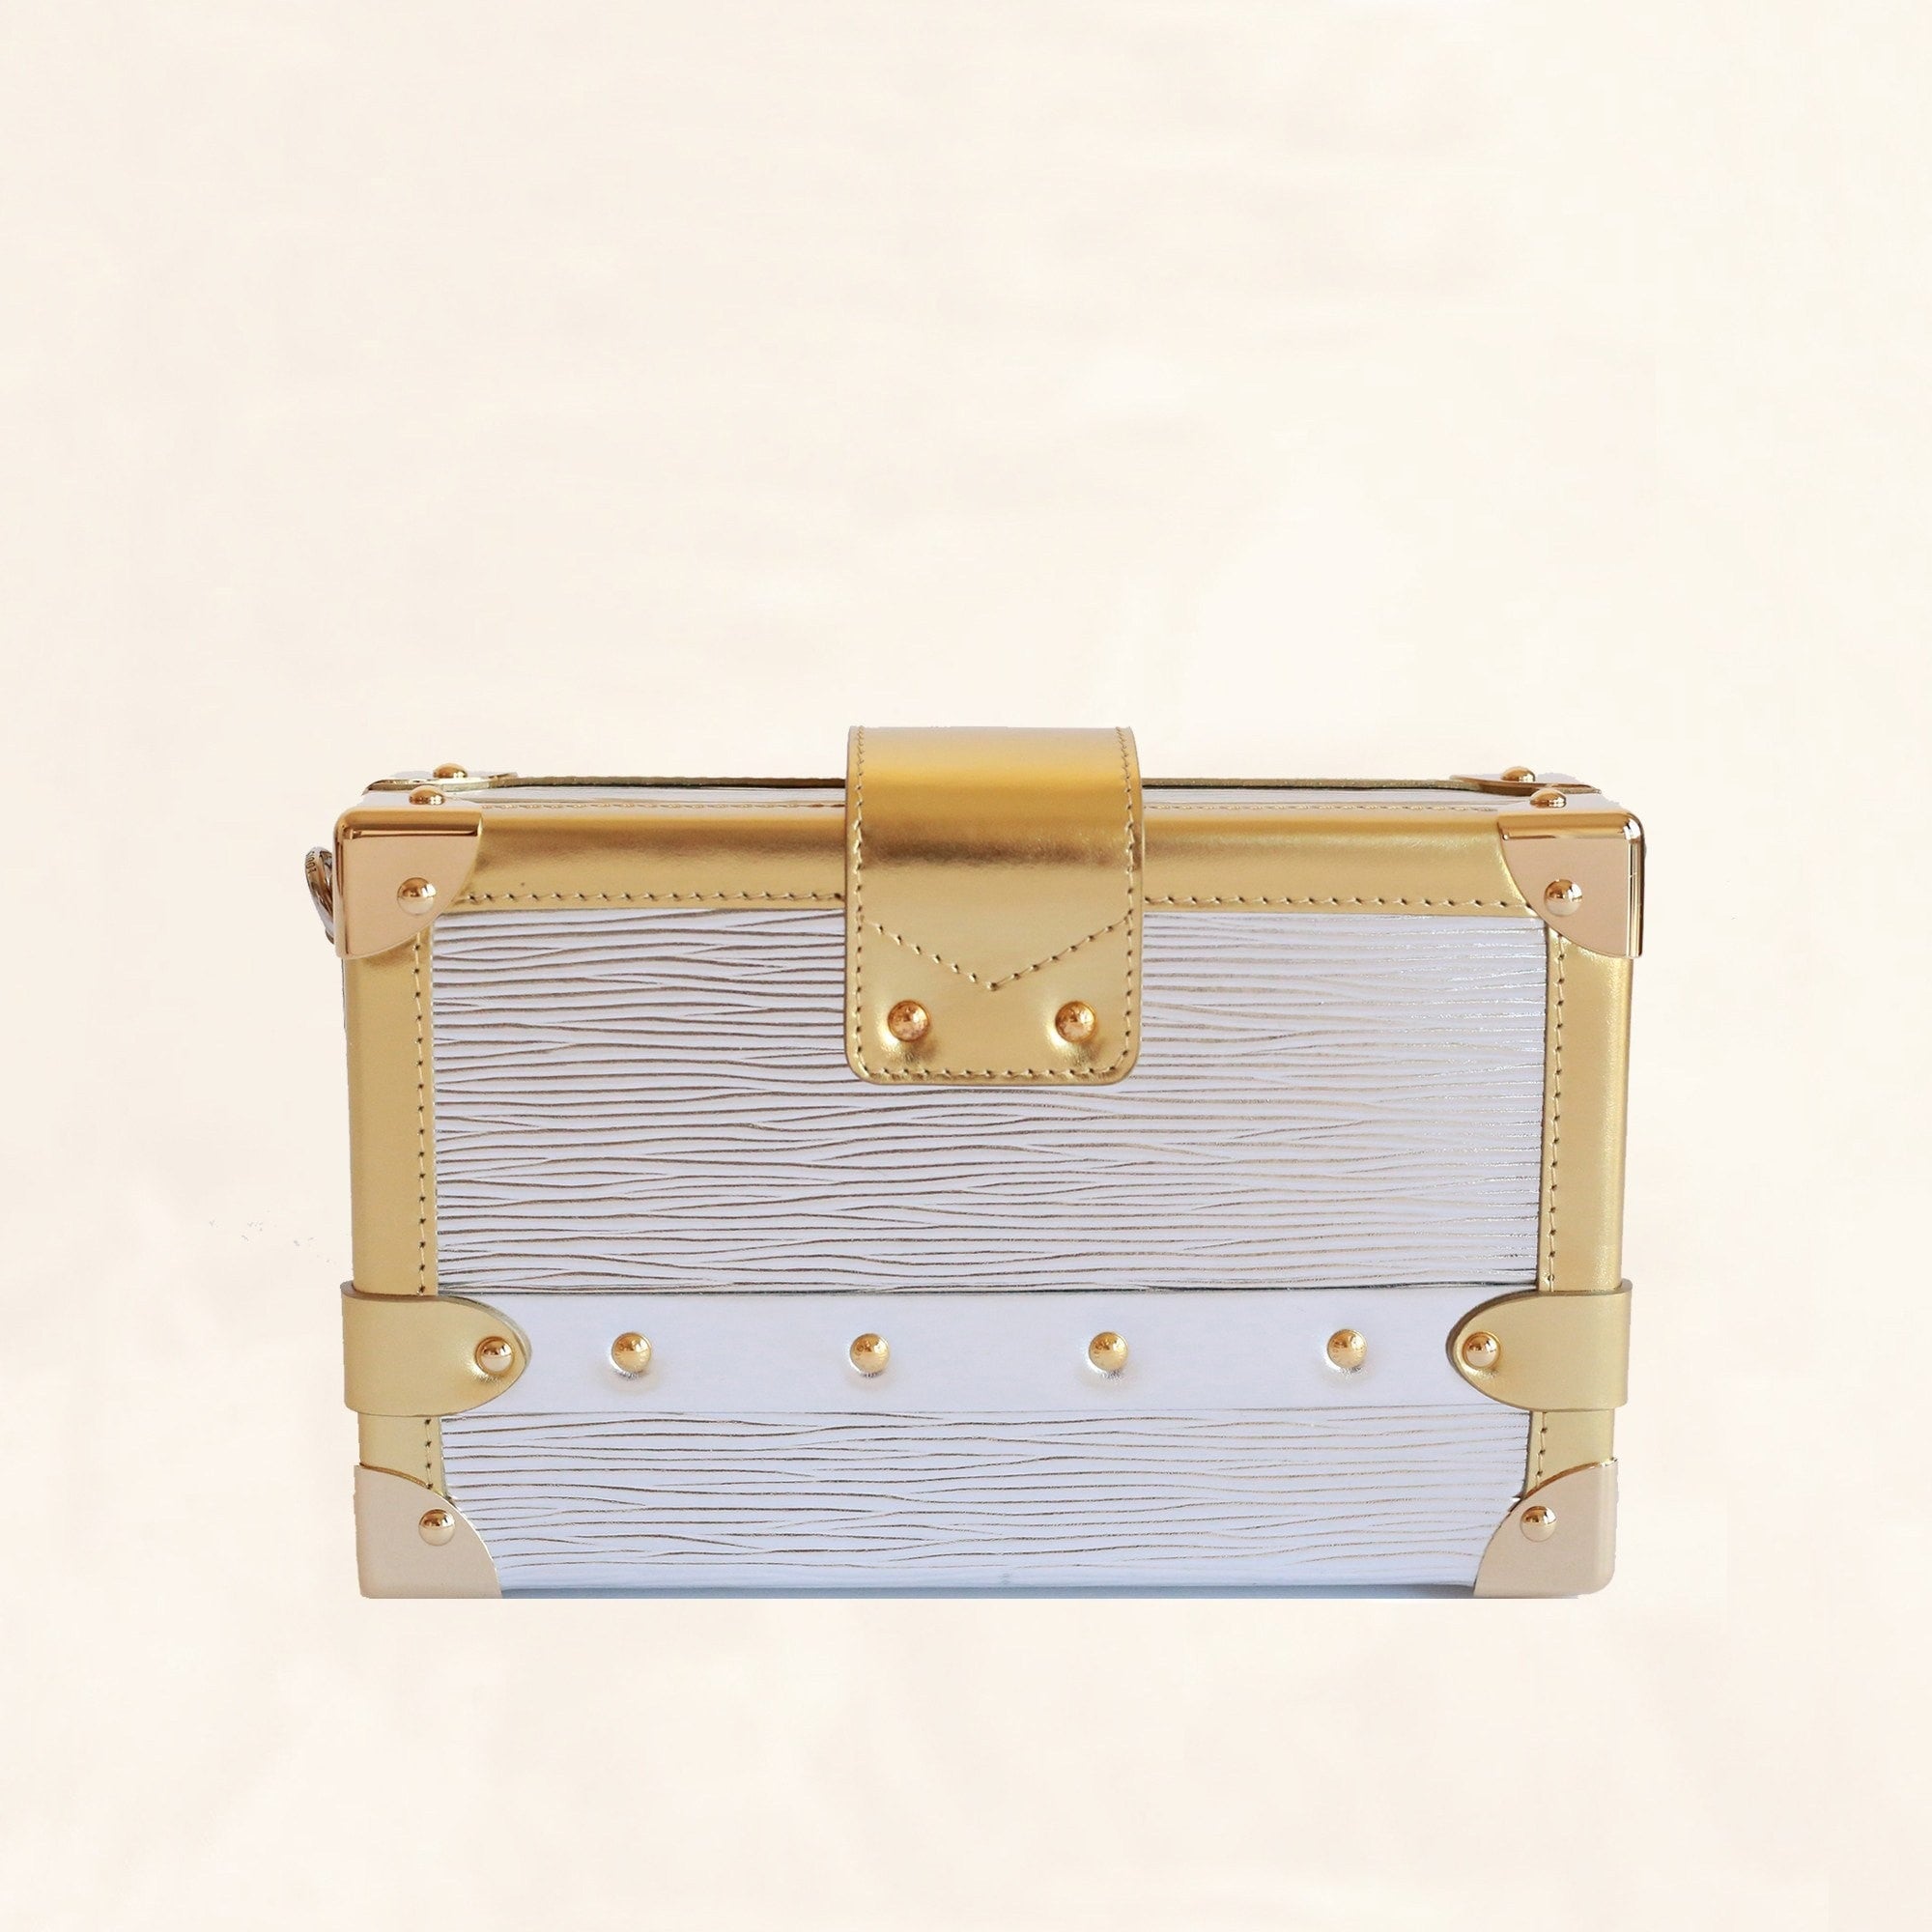 Gold Metallic Louis Vuitton Bag